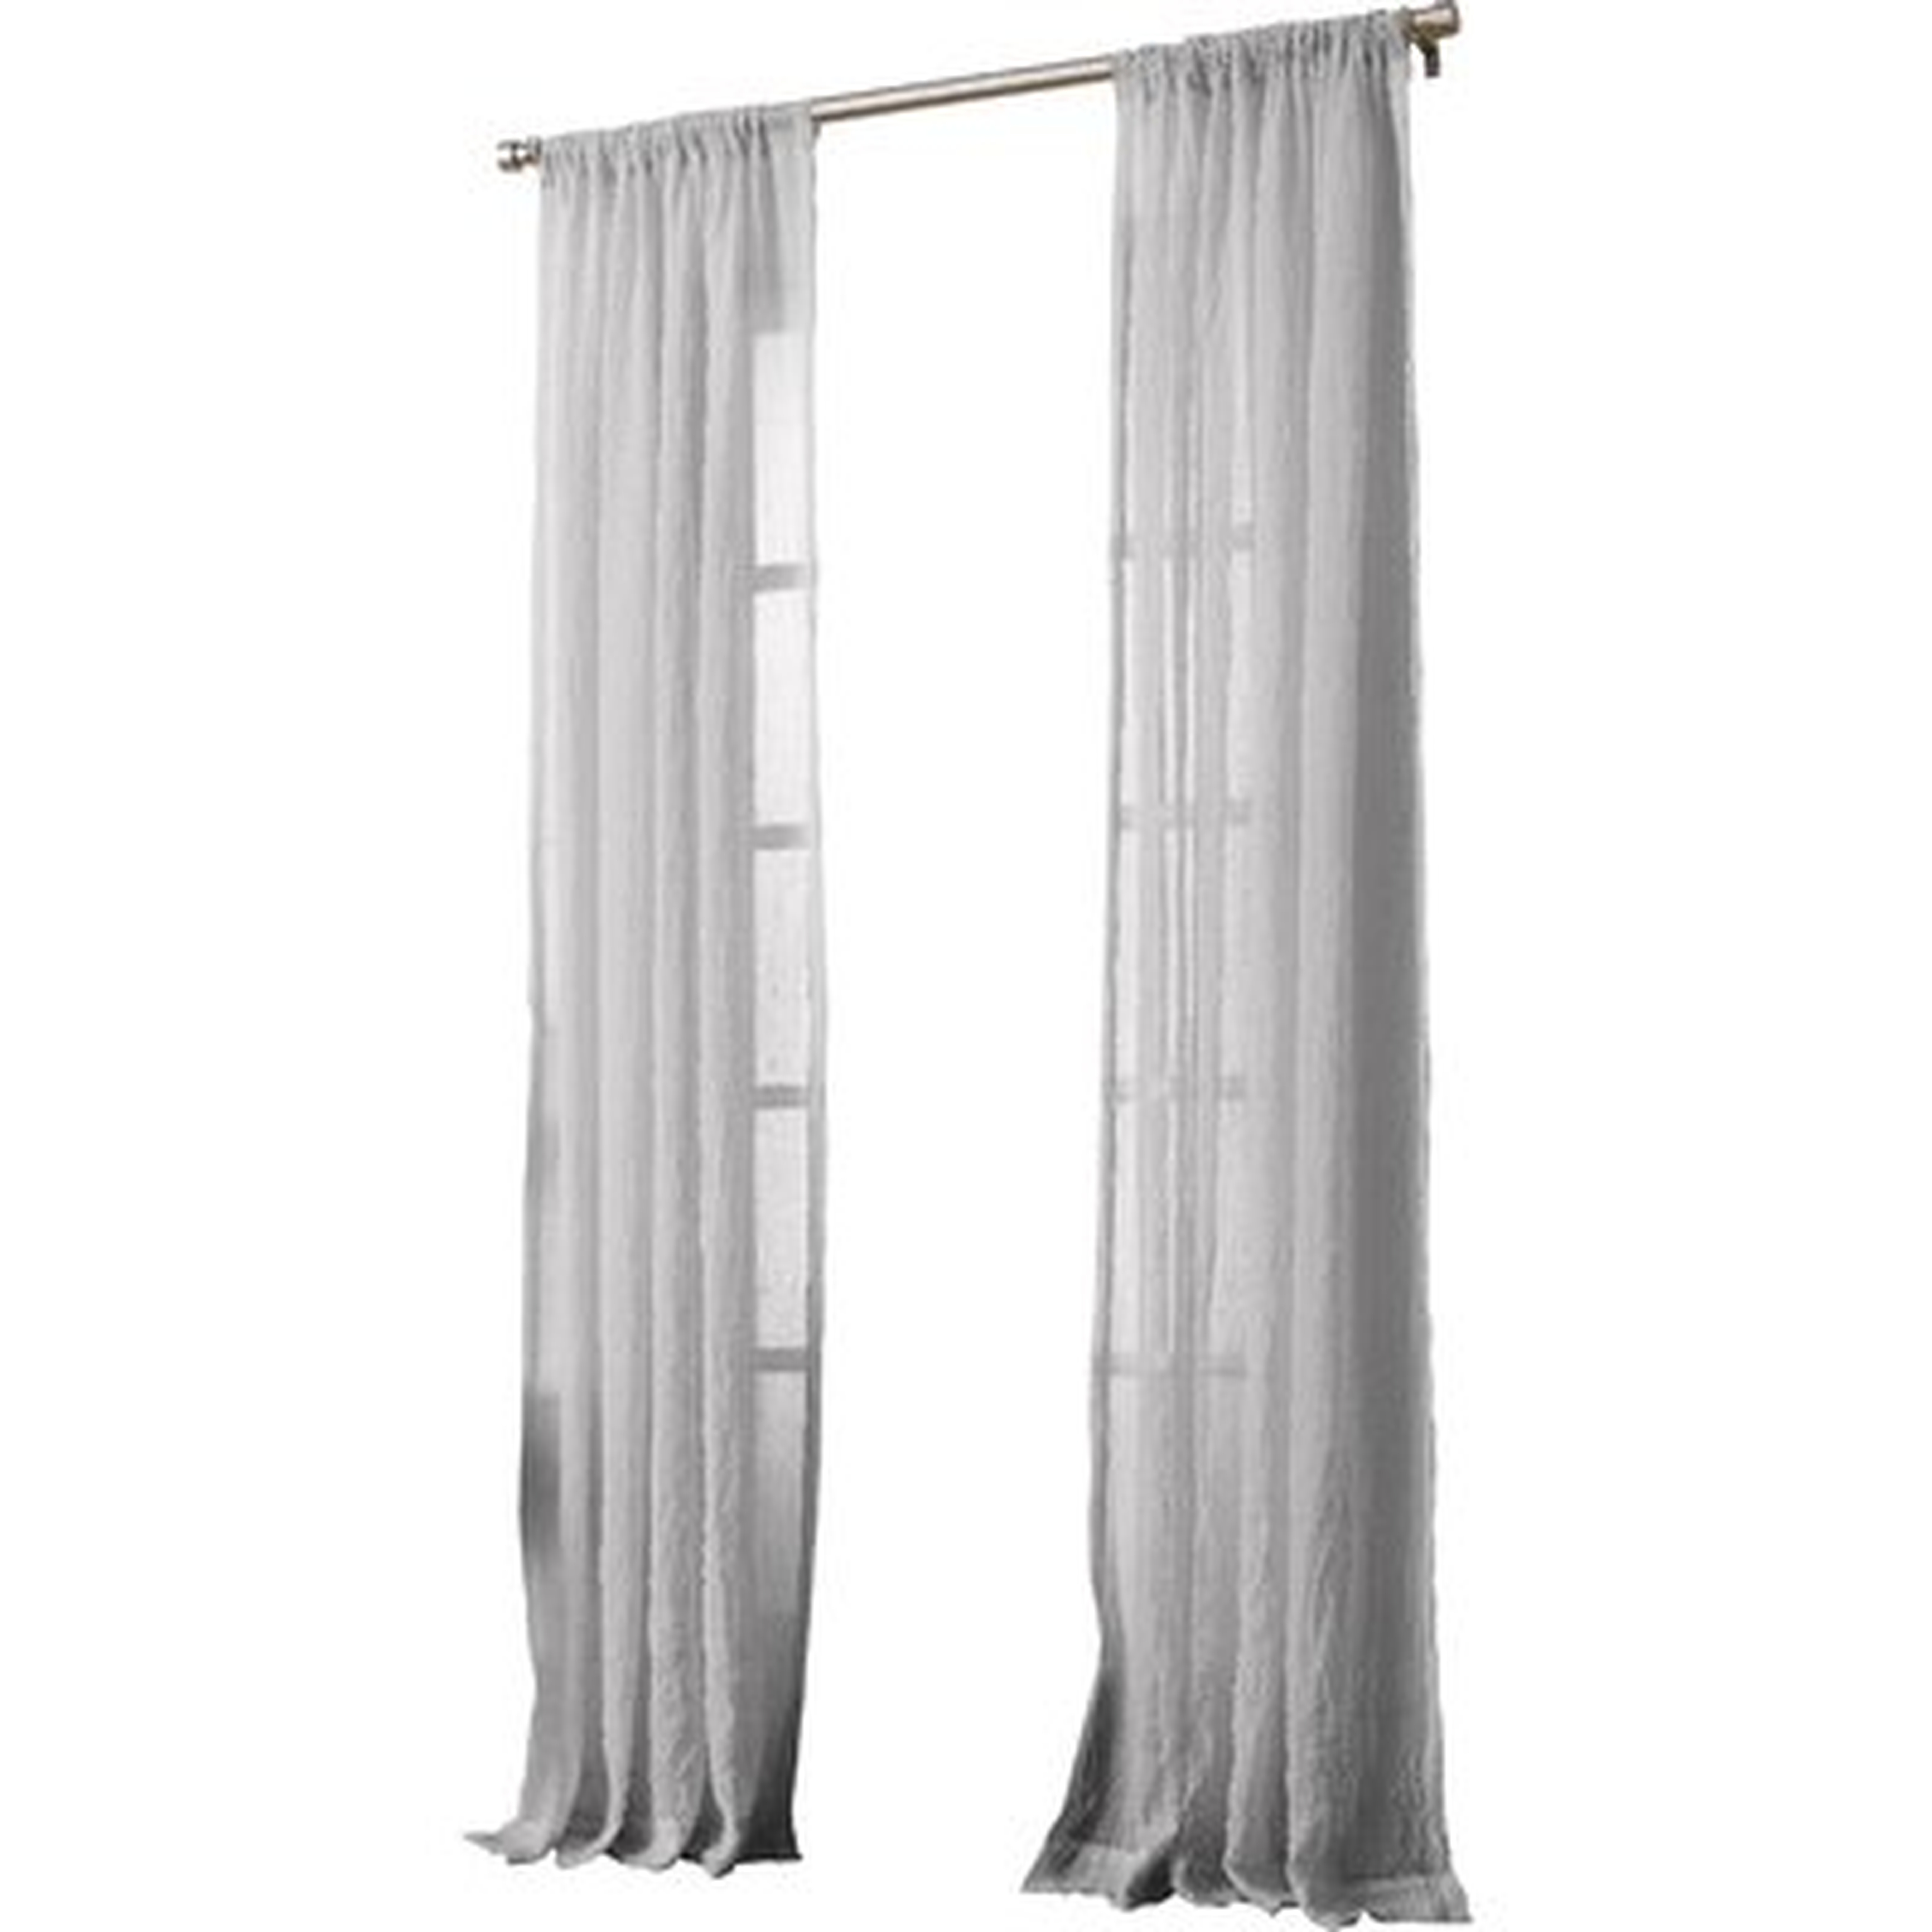 Marden Solid Sheer Rod Pocket Single Curtain Panel - AllModern